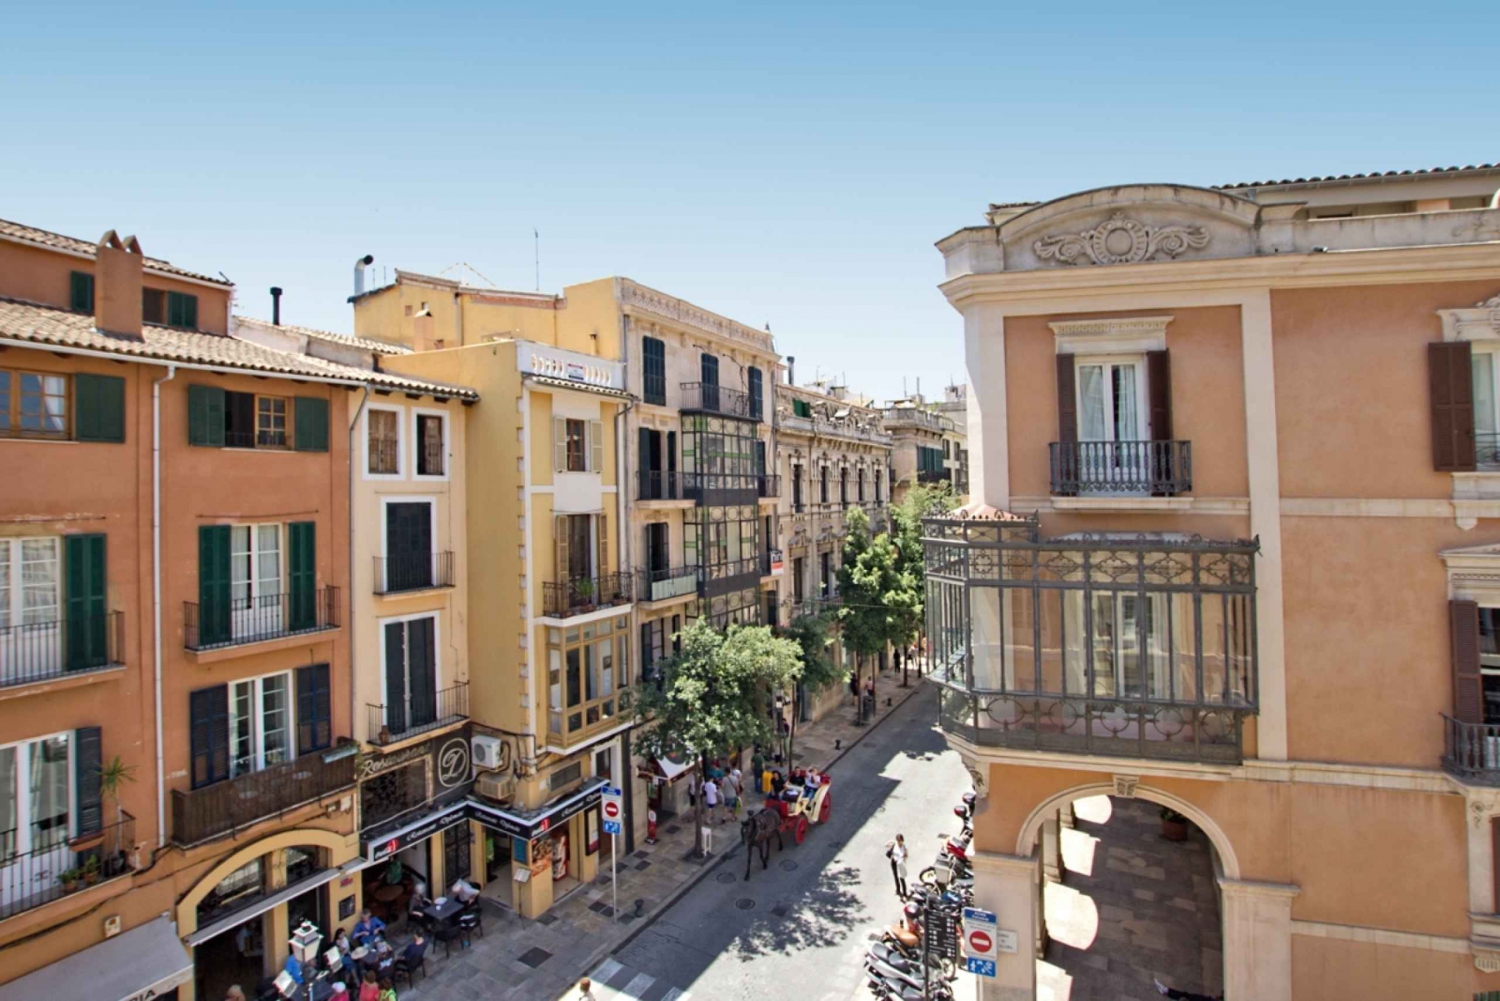 Palma de Mallorca: Sightseeing Bus Tour